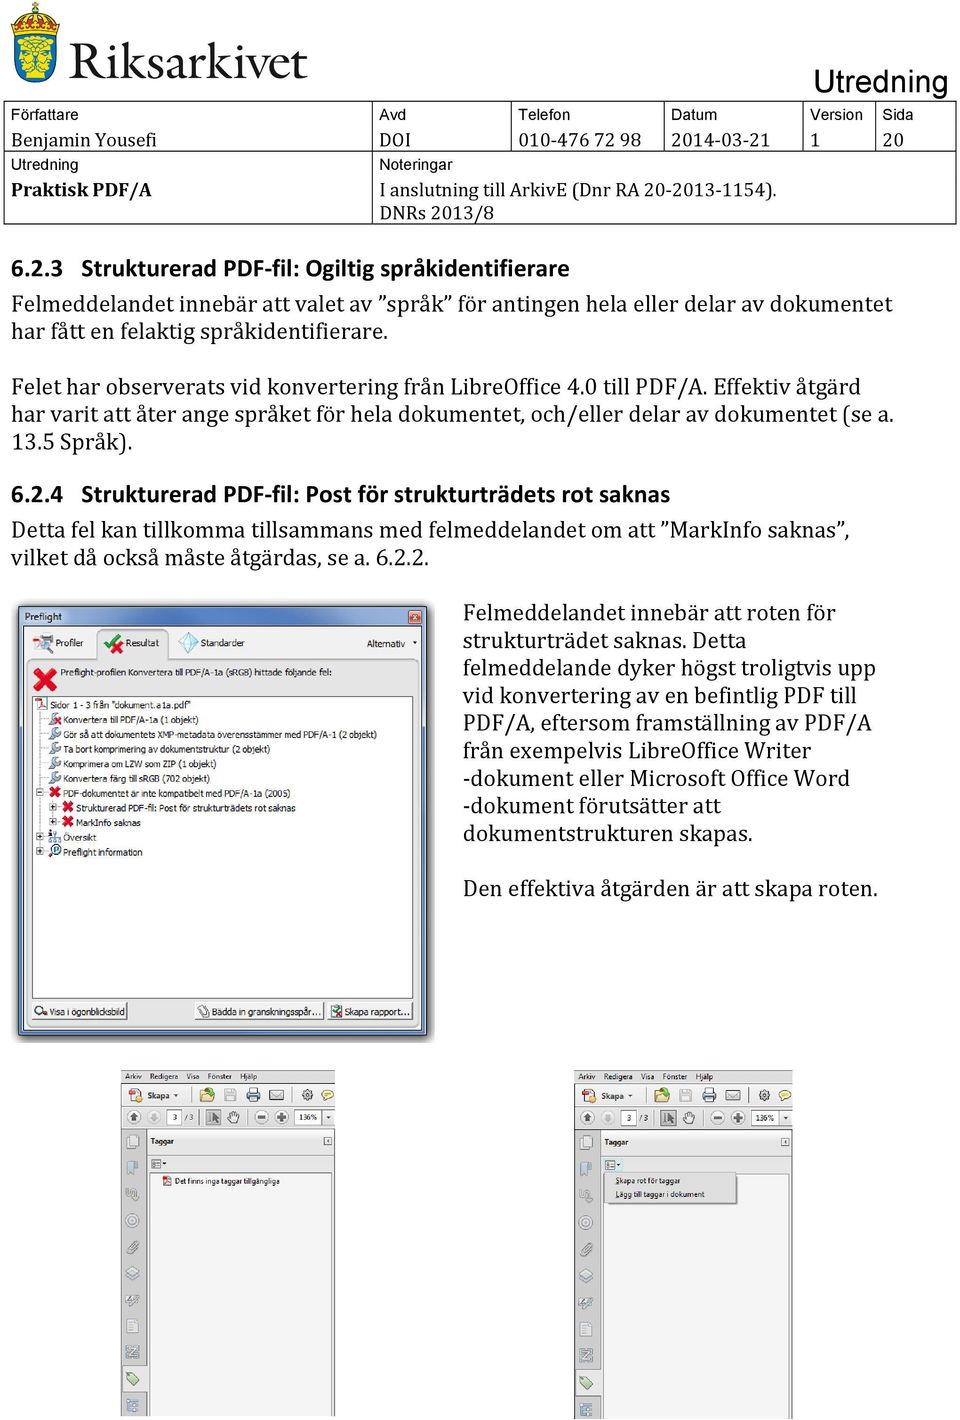 Felet har observerats vid konvertering från LibreOffice 4.0 till PDF/A. Effektiv åtgärd har varit att åter ange språket för hela dokumentet, och/eller delar av dokumentet (se a. 13.5 Språk). 6.2.